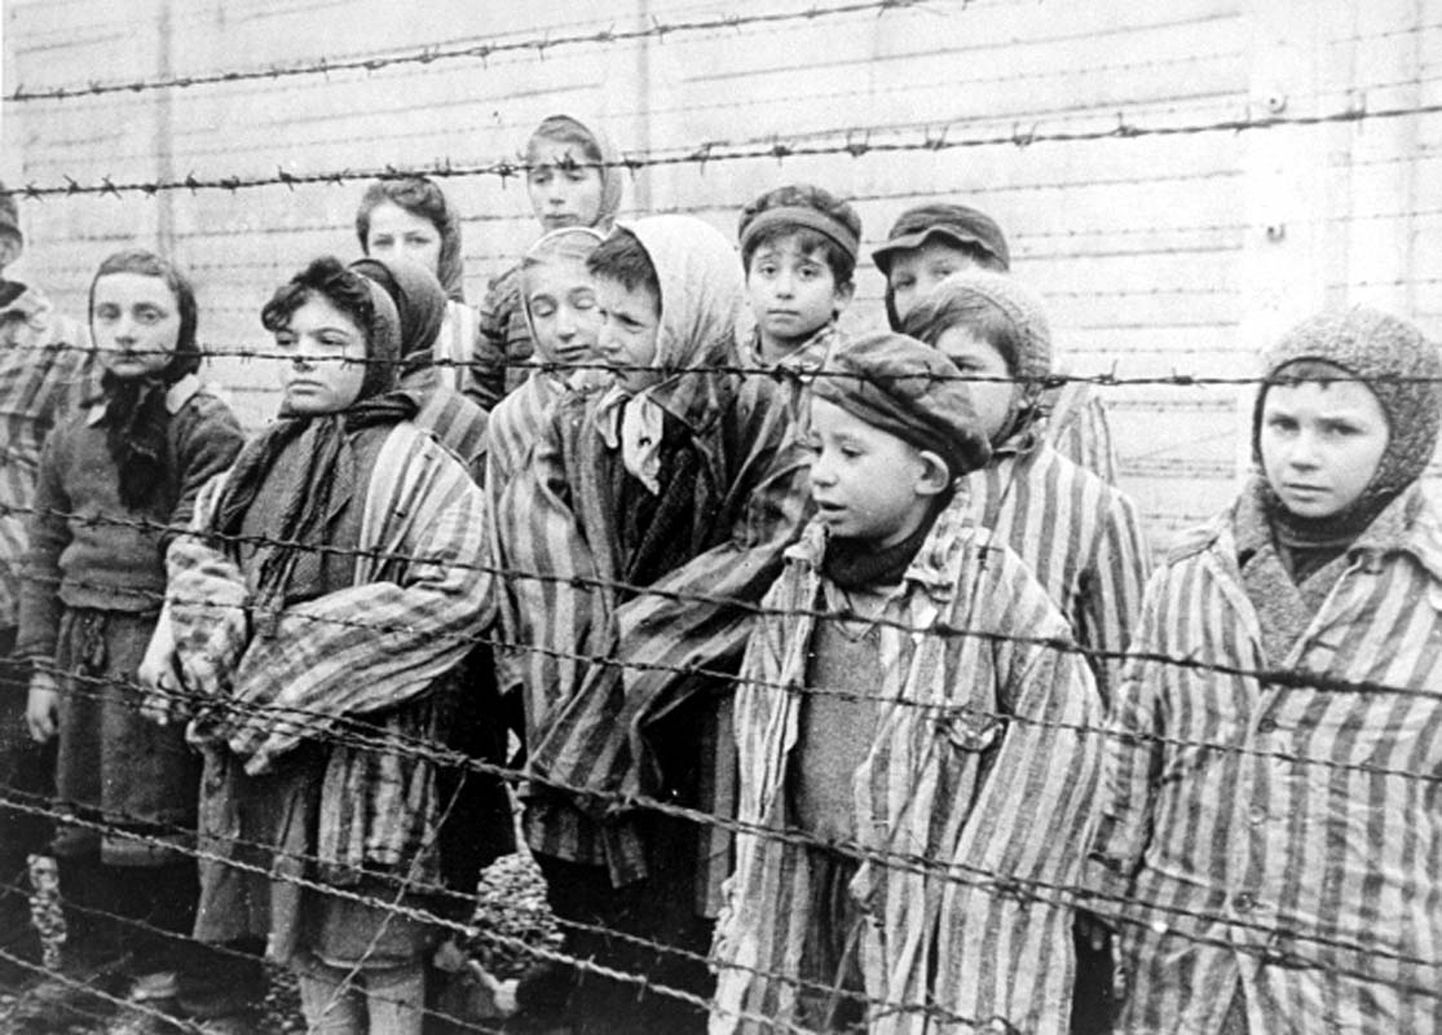 Bērni koncentrācijas nometnē.